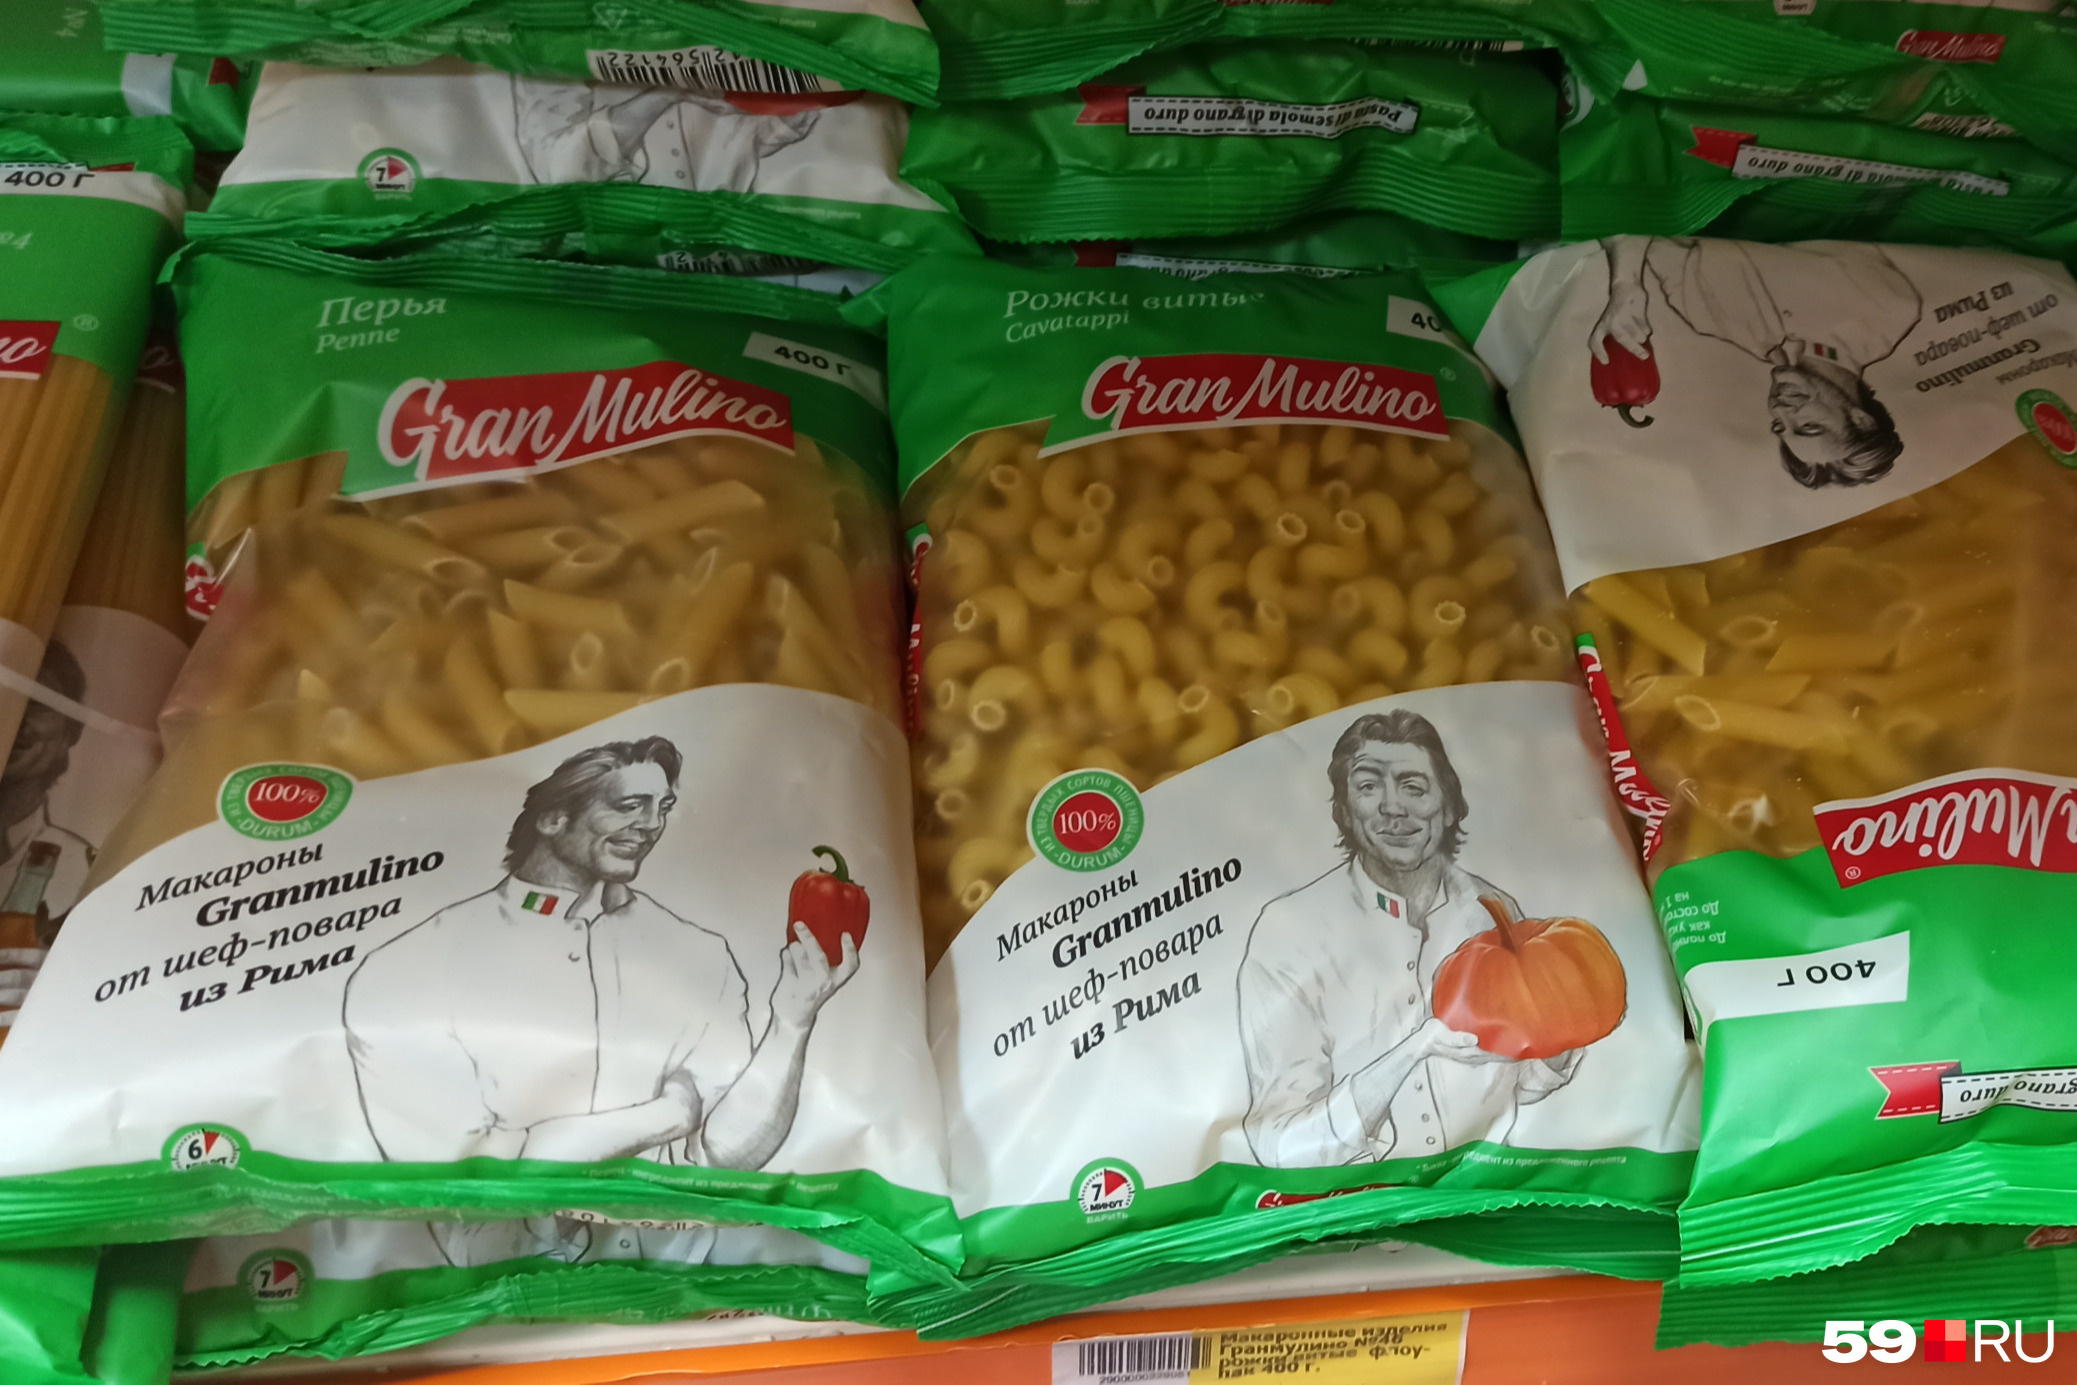 А вот эти макароны пусть вас не обманывают итальянцем на упаковке, их произвели в Алтайском крае